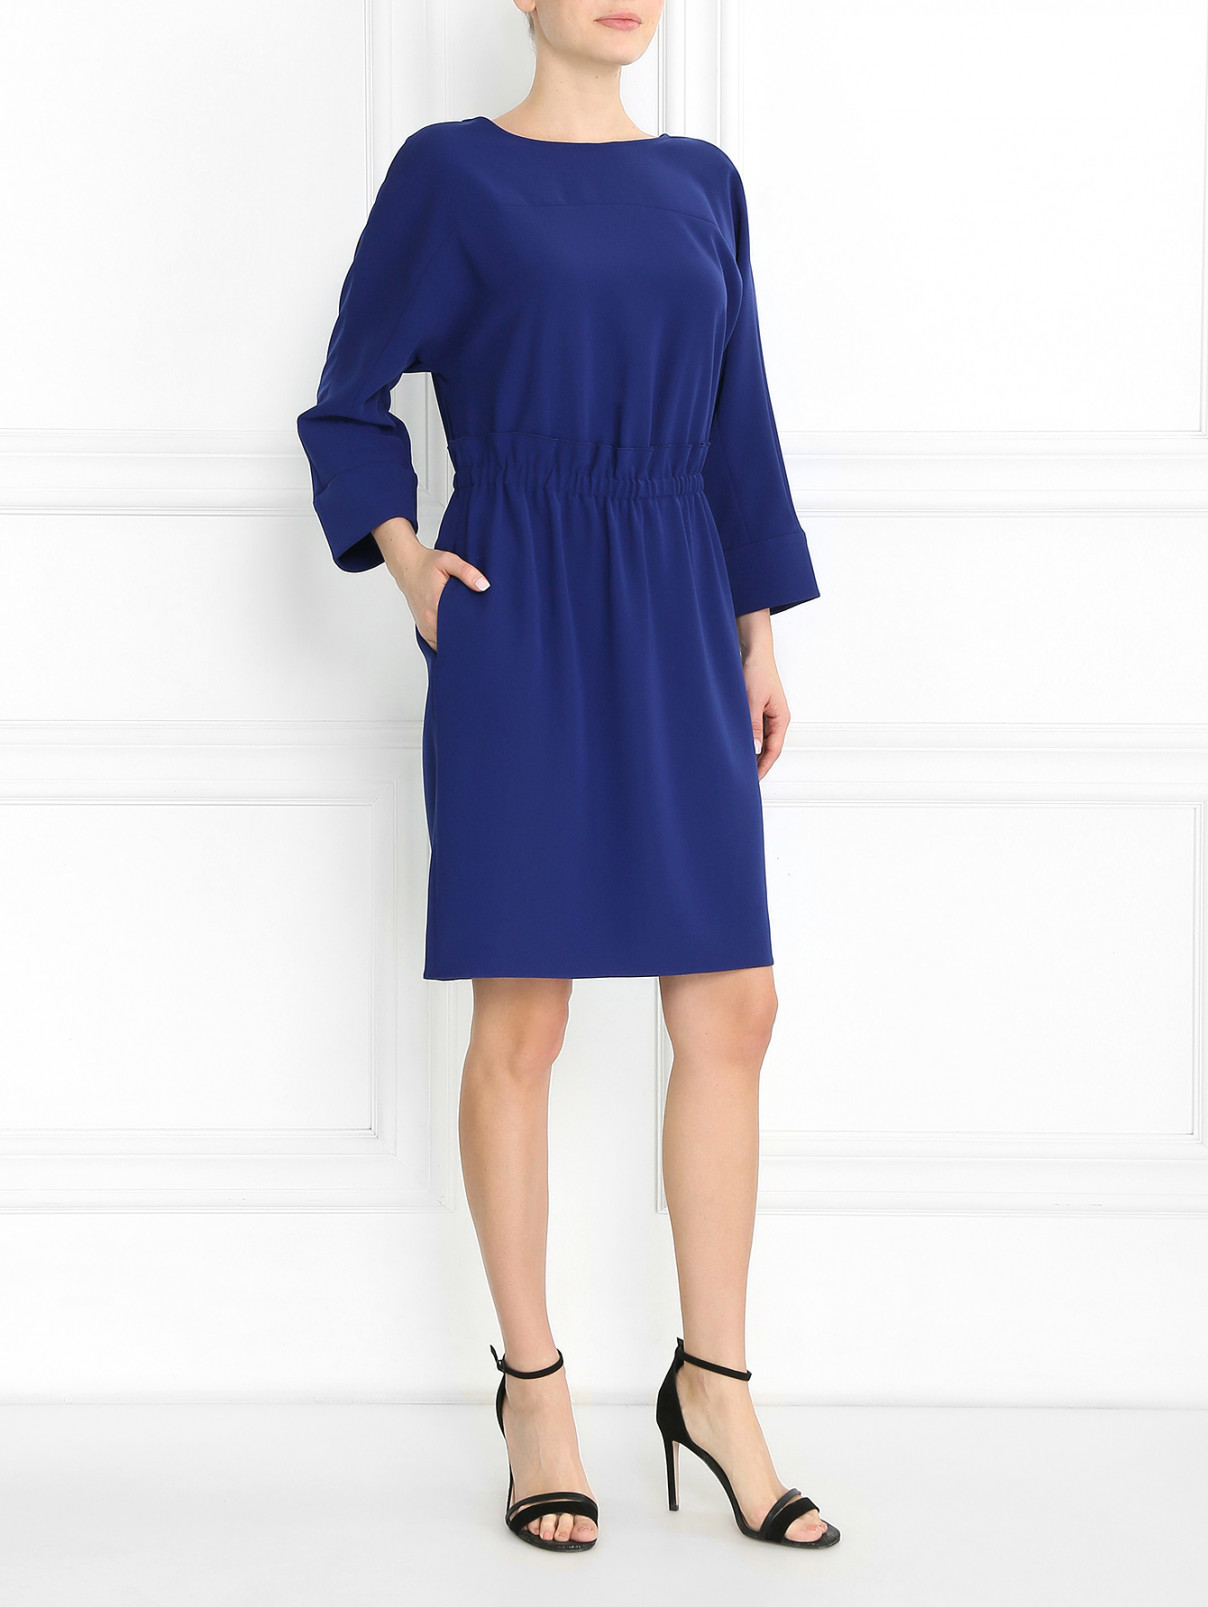 Платье-мини с драпировкой Armani Collezioni  –  Модель Общий вид  – Цвет:  Синий